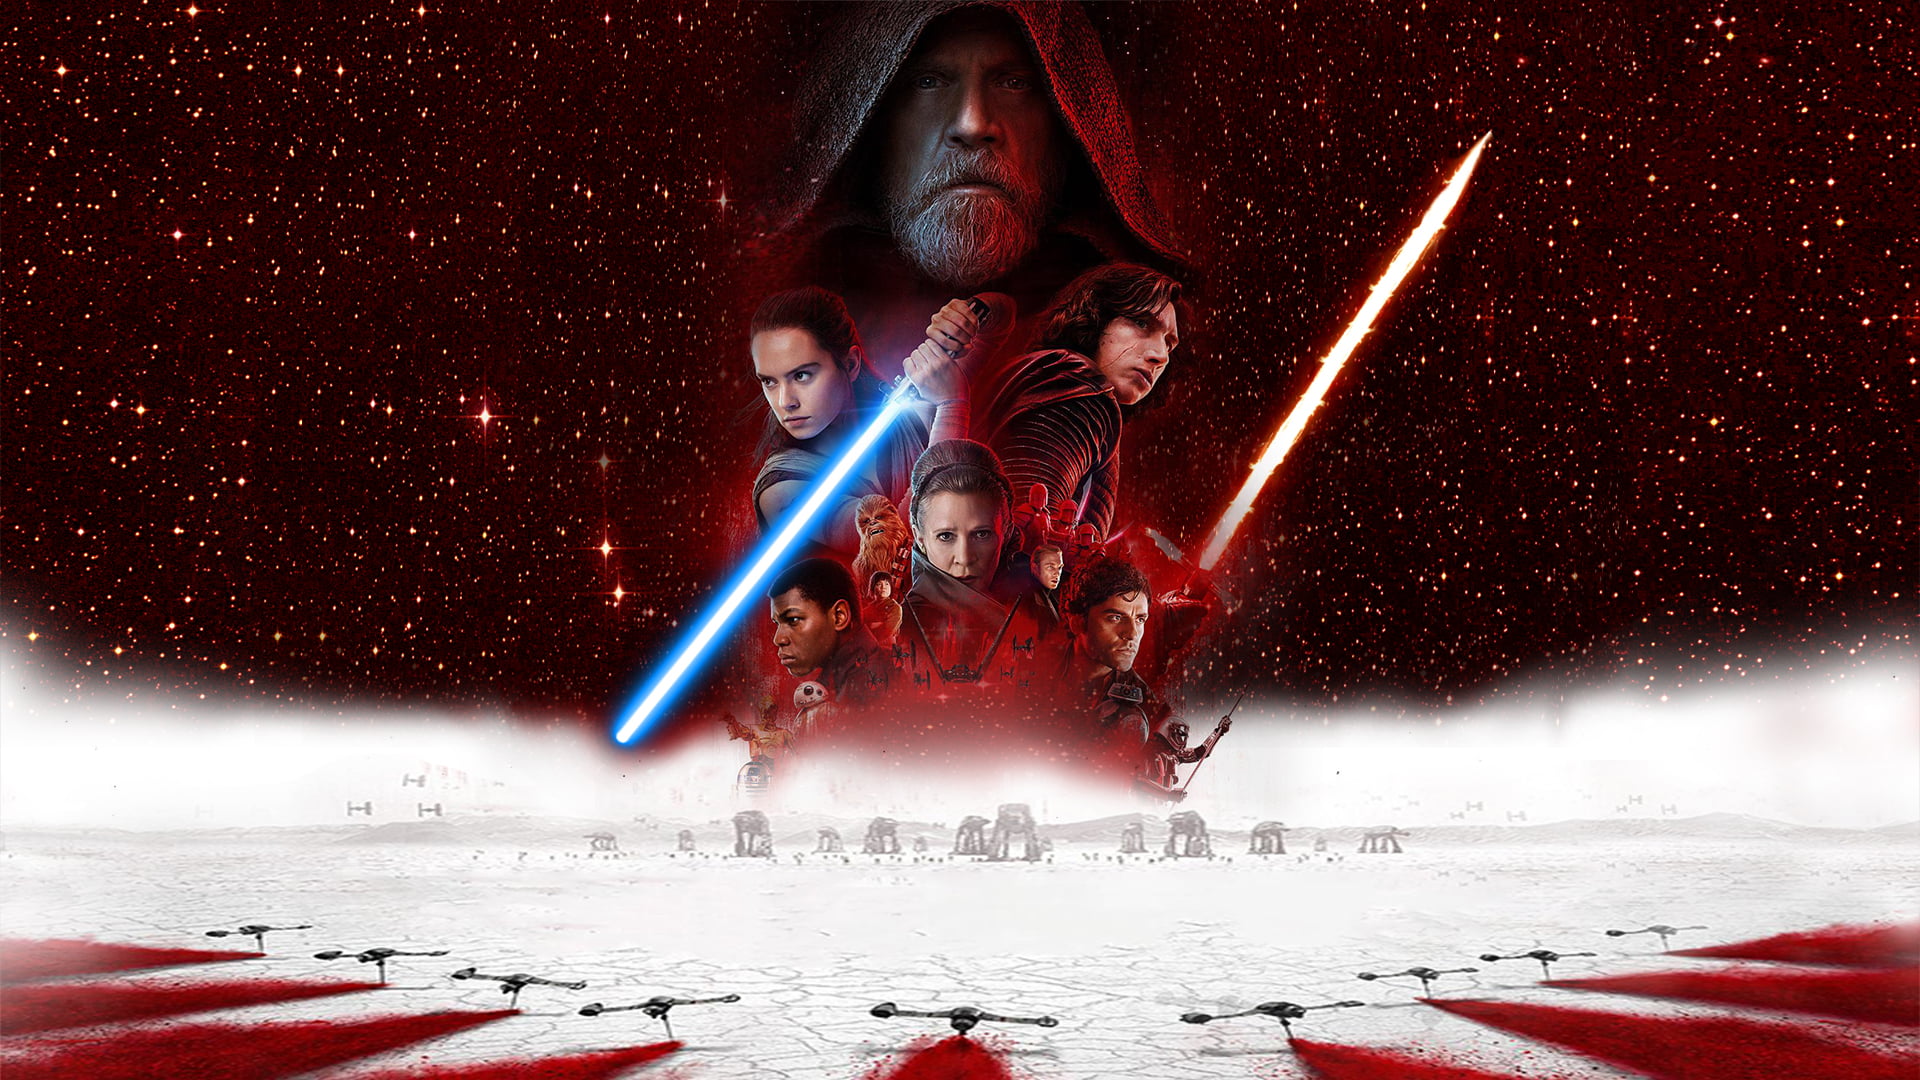 Star Wars digital wallpaper, Star Wars: The Last Jedi, Rey (from Star Wars)...